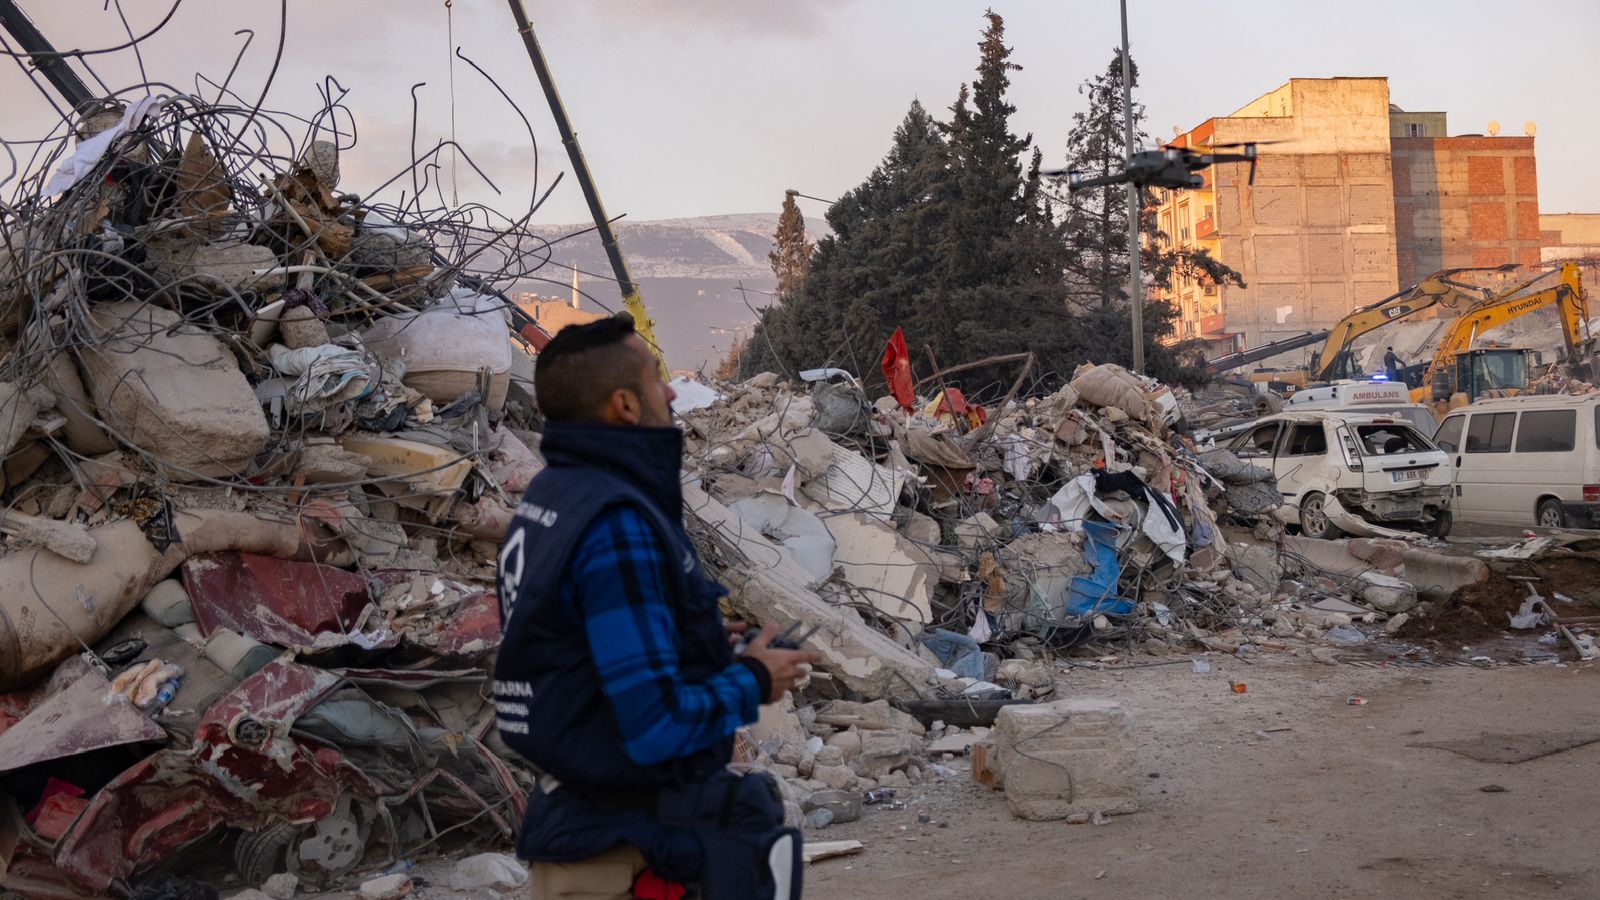 El guatemalteco Javier Haeussler vuela un dron en la zona de desastre a causa de un potente terremoto en Turquía, donde de la mano de la organización Help NGO elaboran mapas para facilitar las tareas de rescate. (Foto Prensa Libre: Agata Klat/ Help.NGO)